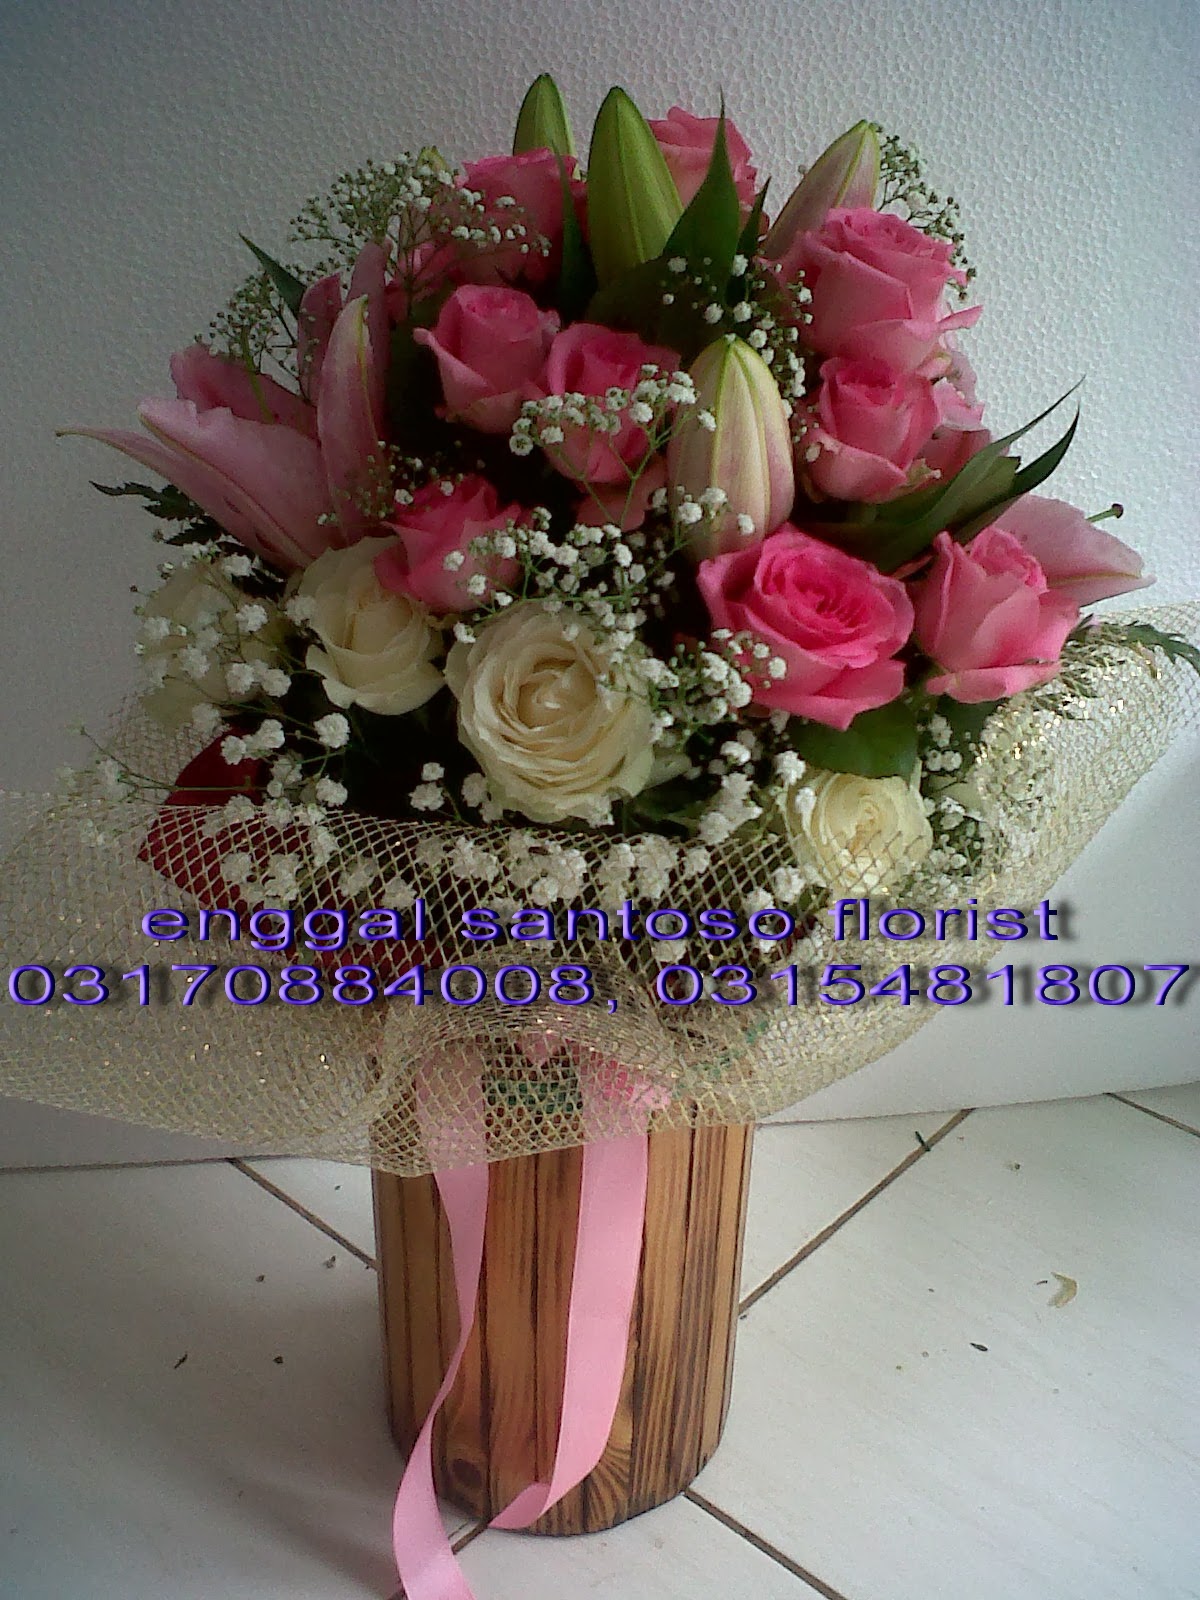 bunga tangan dan hand bouquet toko bunga surabaya enggal santoso florist